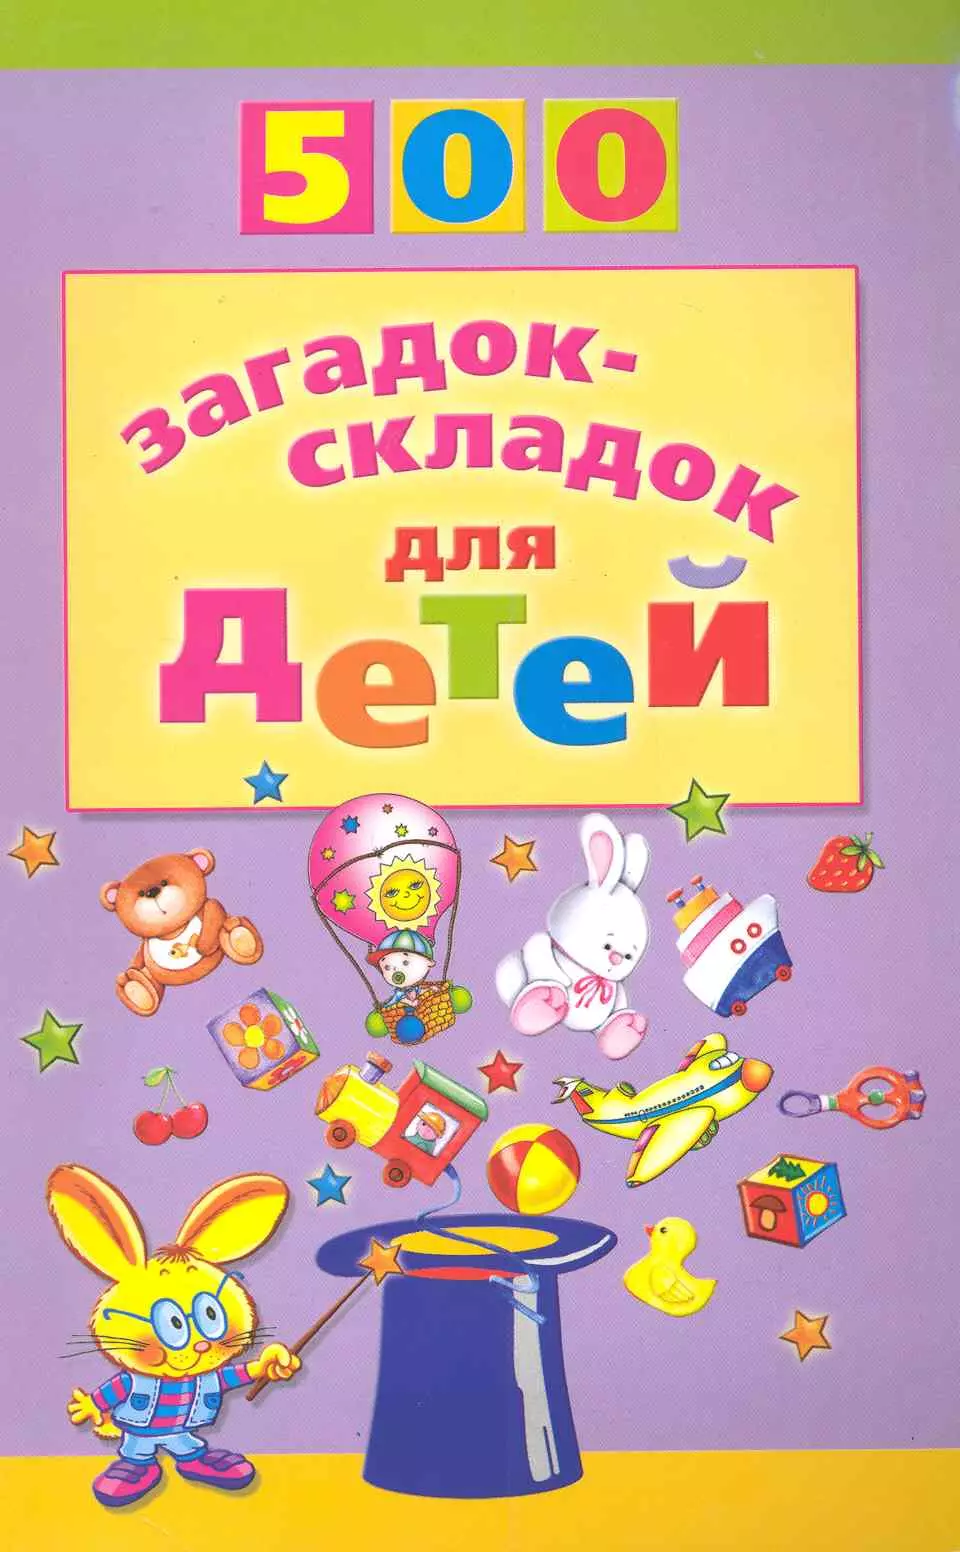 Агеева Инесса Дмитриевна - 500 загадок-складок для детей /2-е изд., перераб.